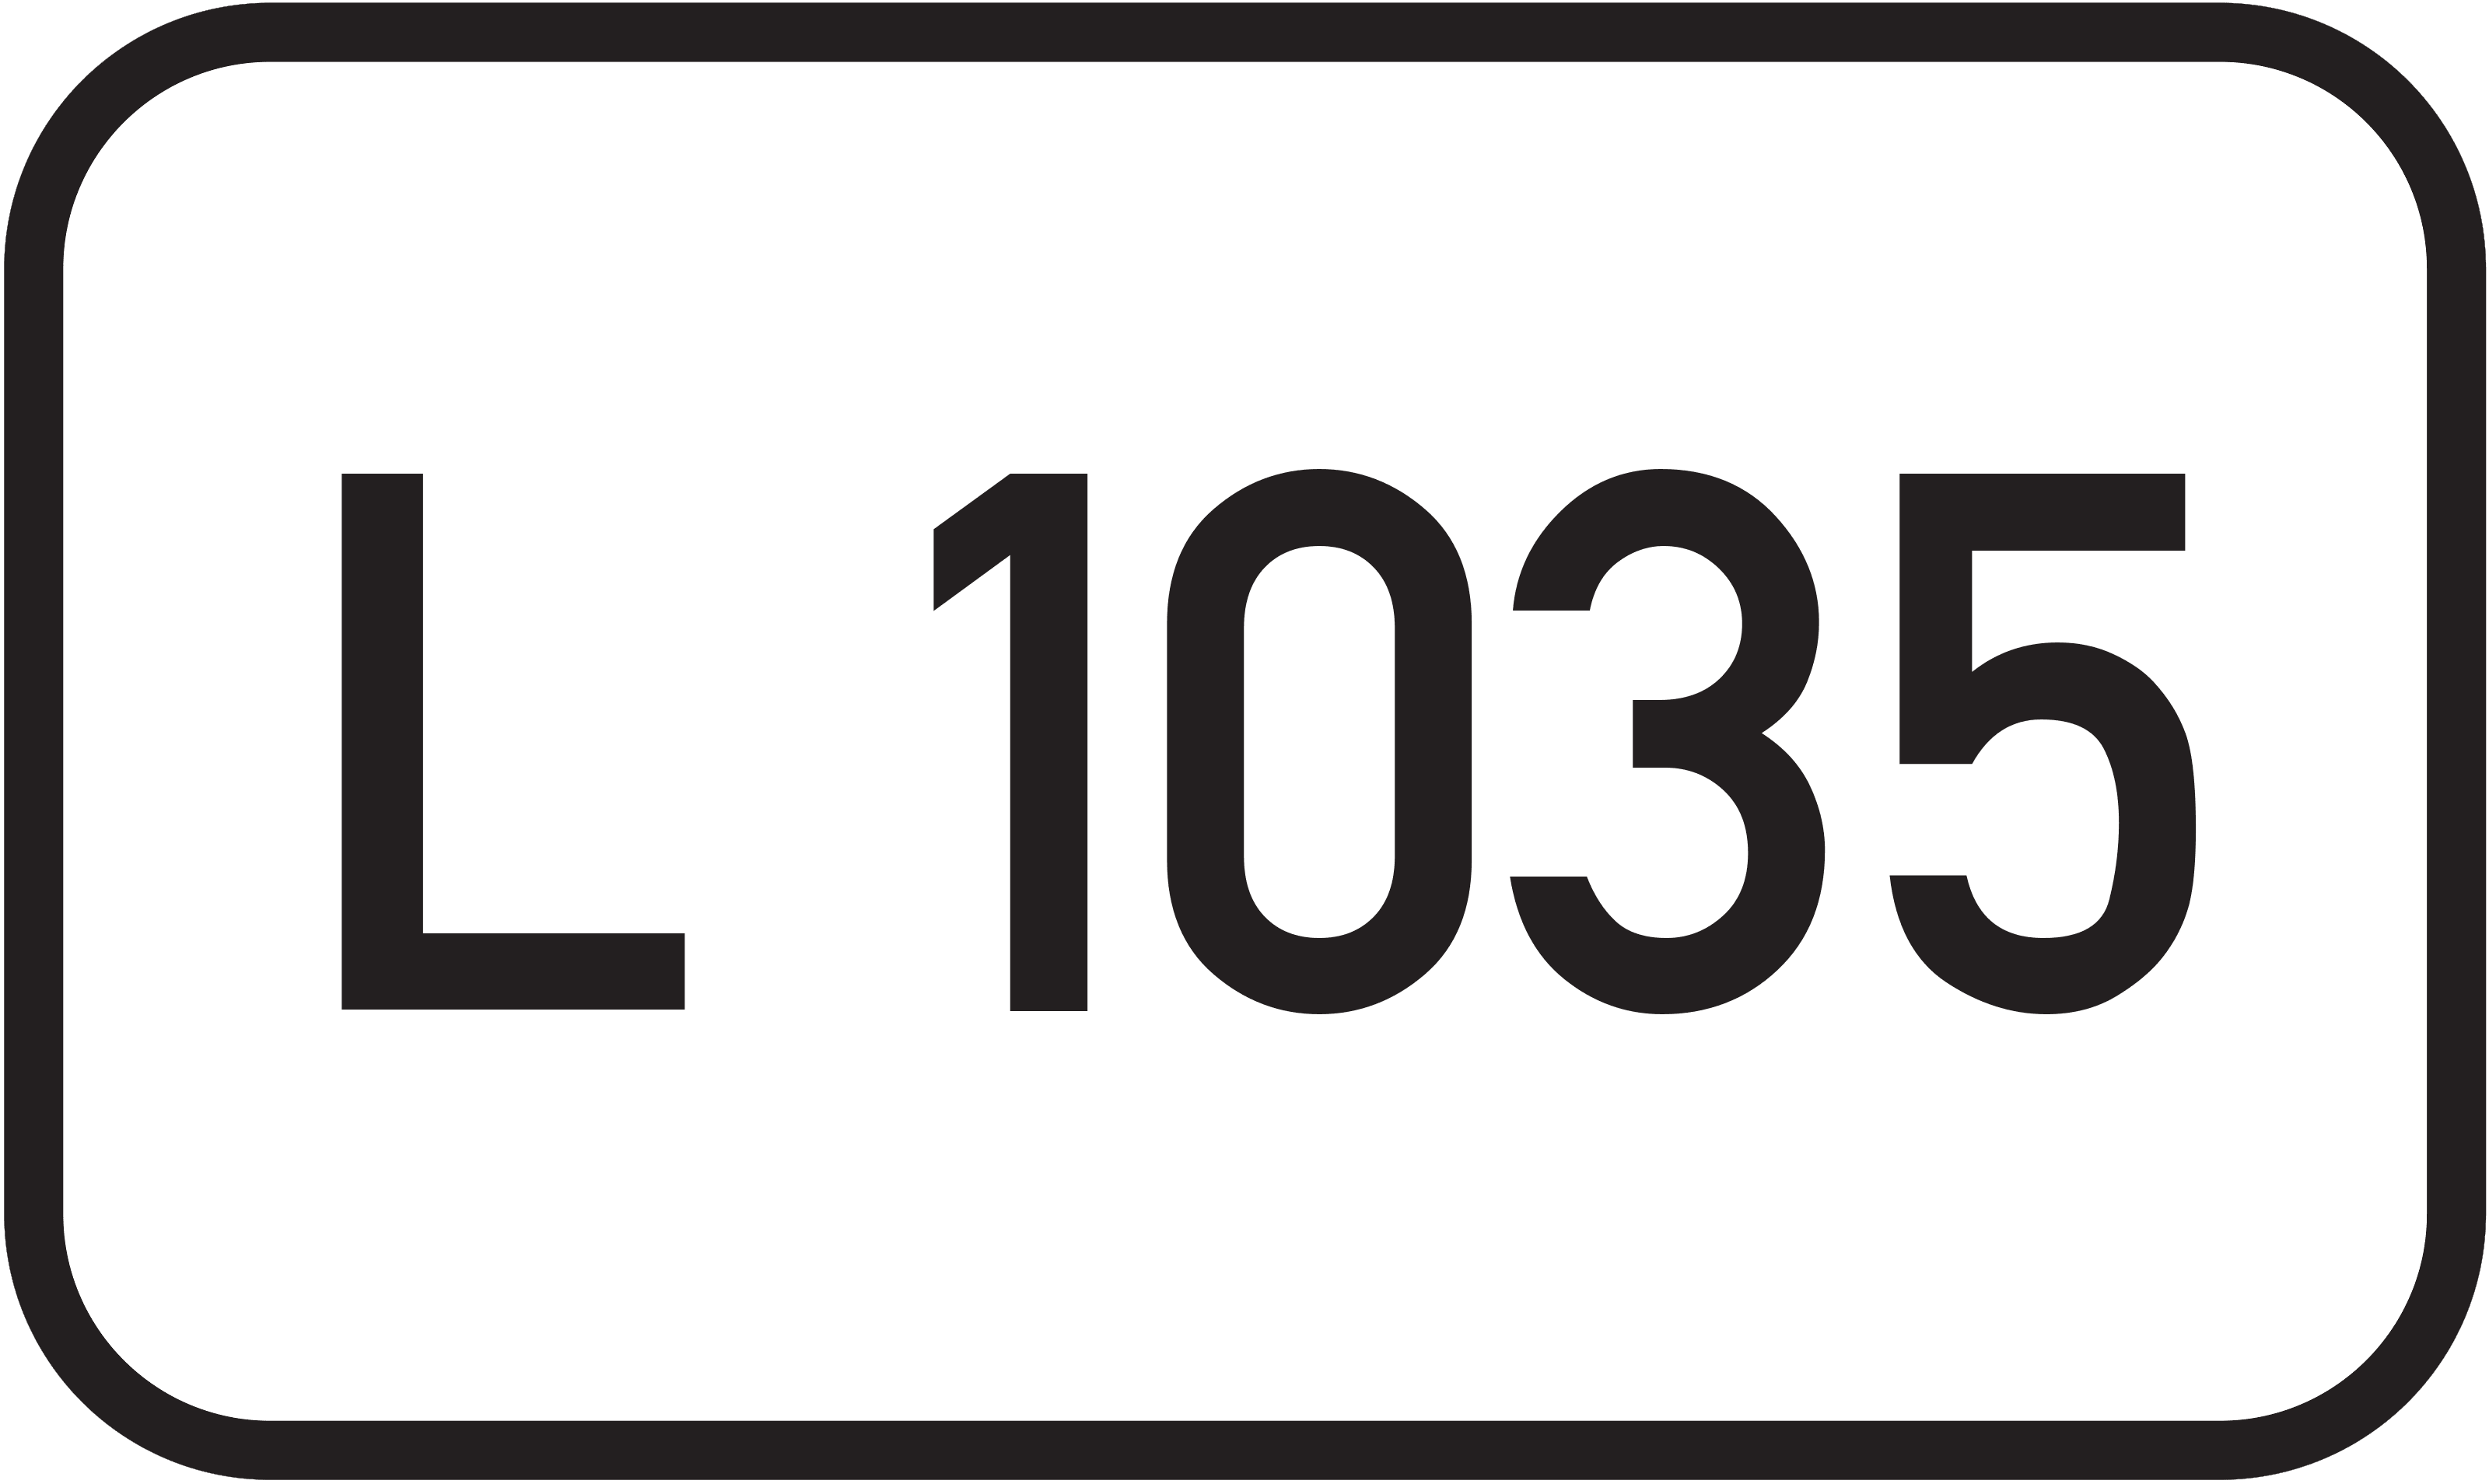 Landesstraße L 1035